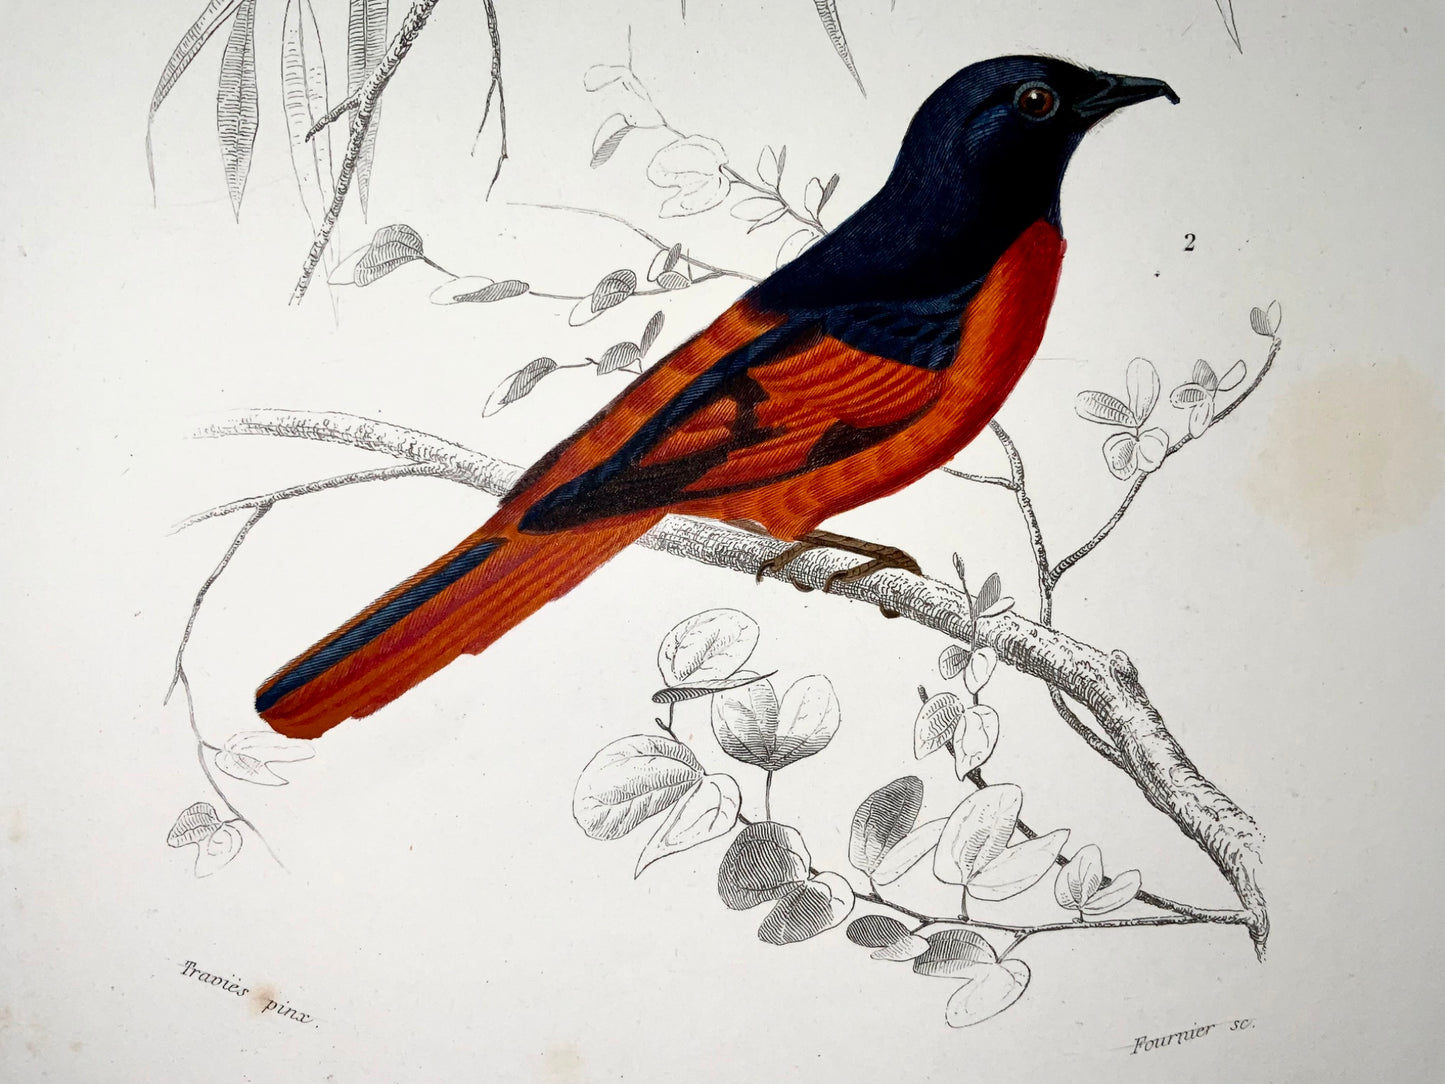 1840 Moucherolles, ornithologie, Éd. Travies, couleur originale de la main